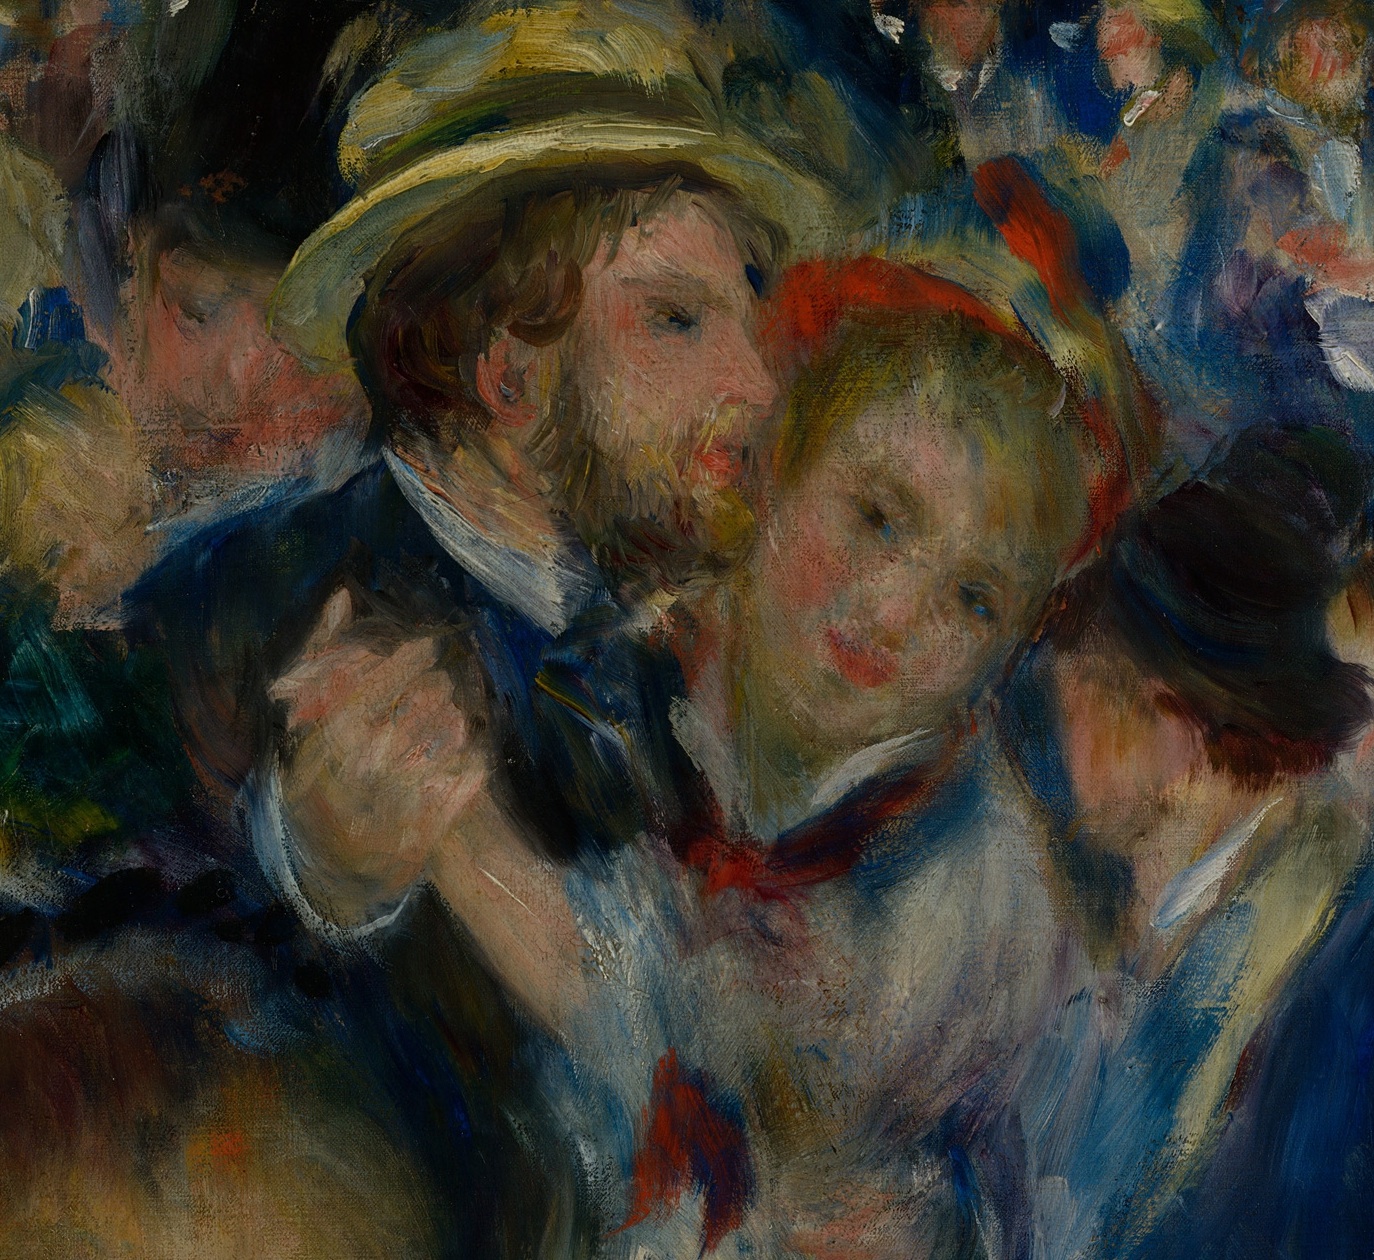 Pierre+Auguste+Renoir-1841-1-19 (964).jpg